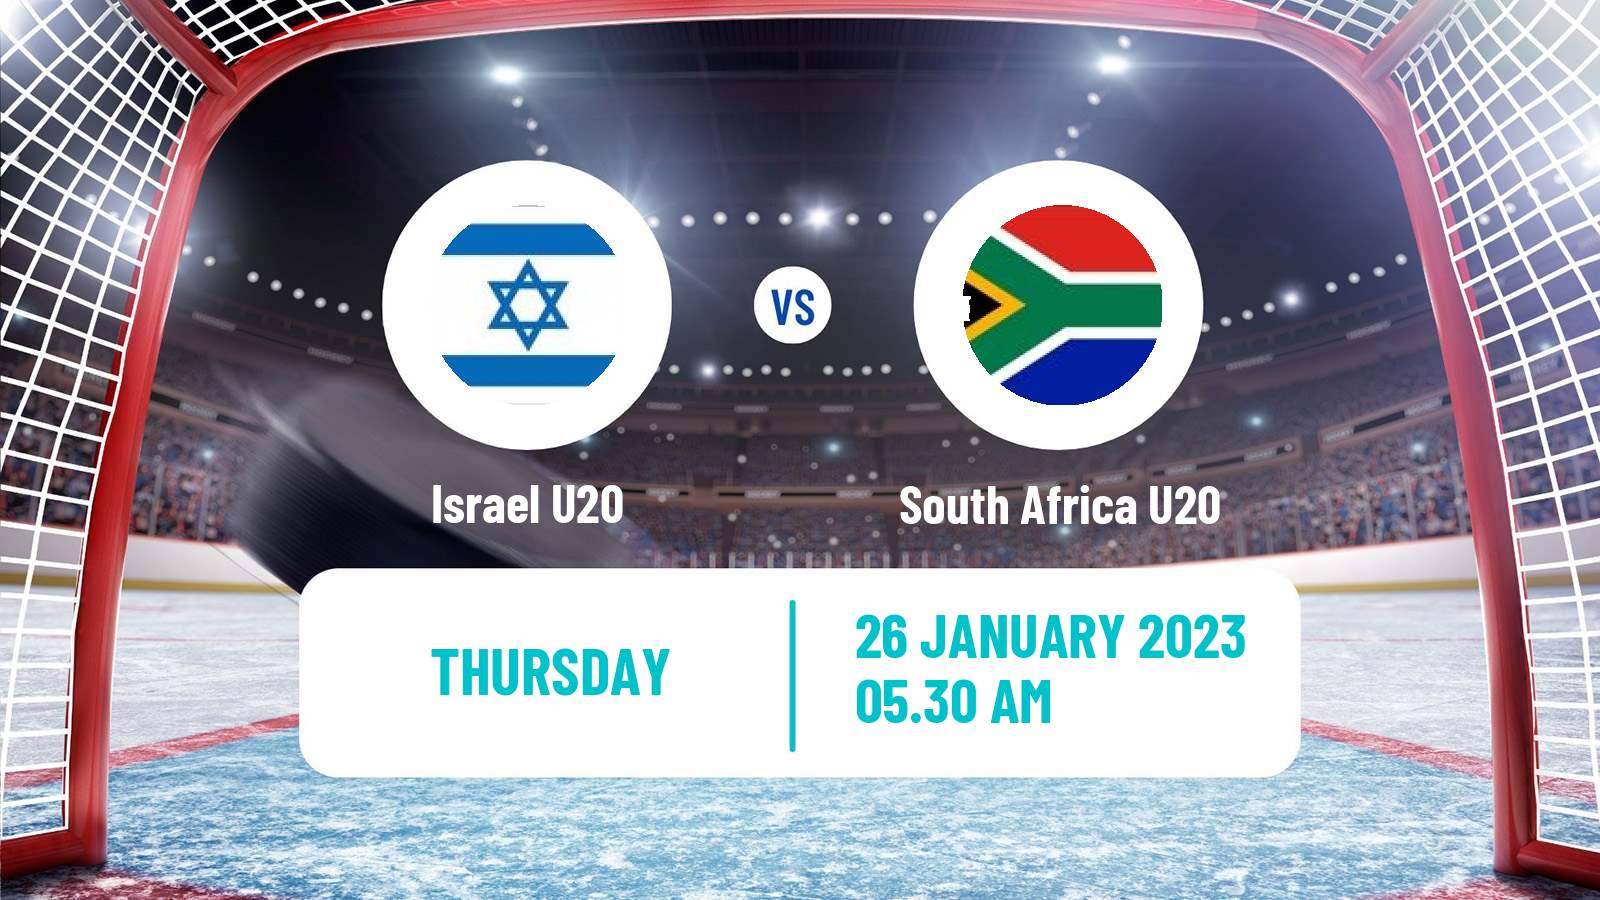 Hockey IIHF World U20 Championship III Israel U20 - South Africa U20